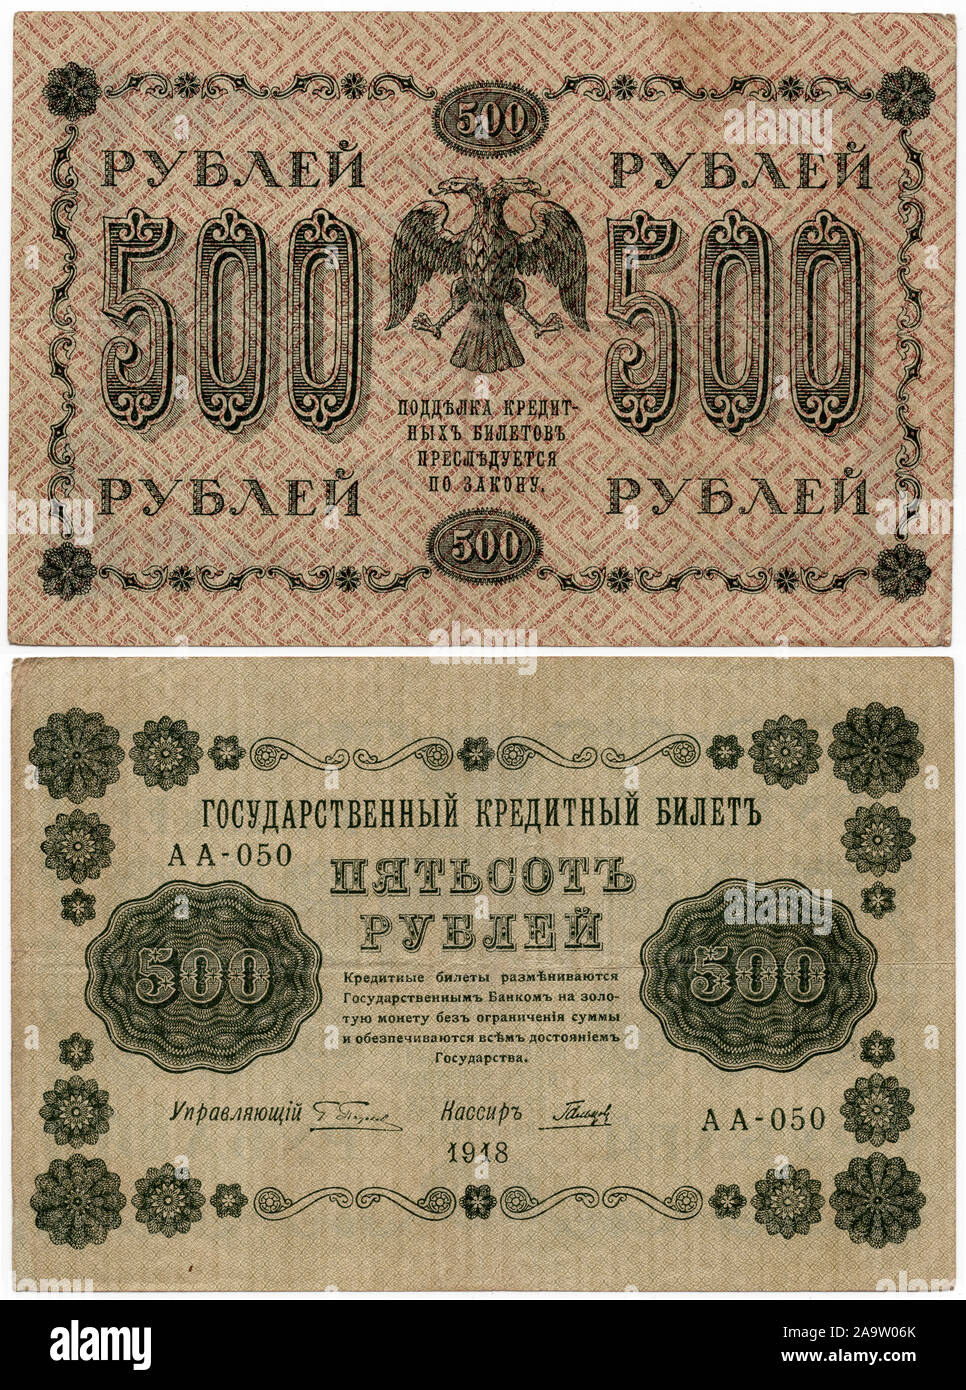 Il russo 500 rubli banconota progettato dal russo Governo Provvisorio durante la rivoluzione russa ma rilasciati già in Russia sovietica nel 1918. Il nuovo stemma della Repubblica Russa progettata da artista russo Ivan Bilibin è raffigurato nella banconota. Foto Stock